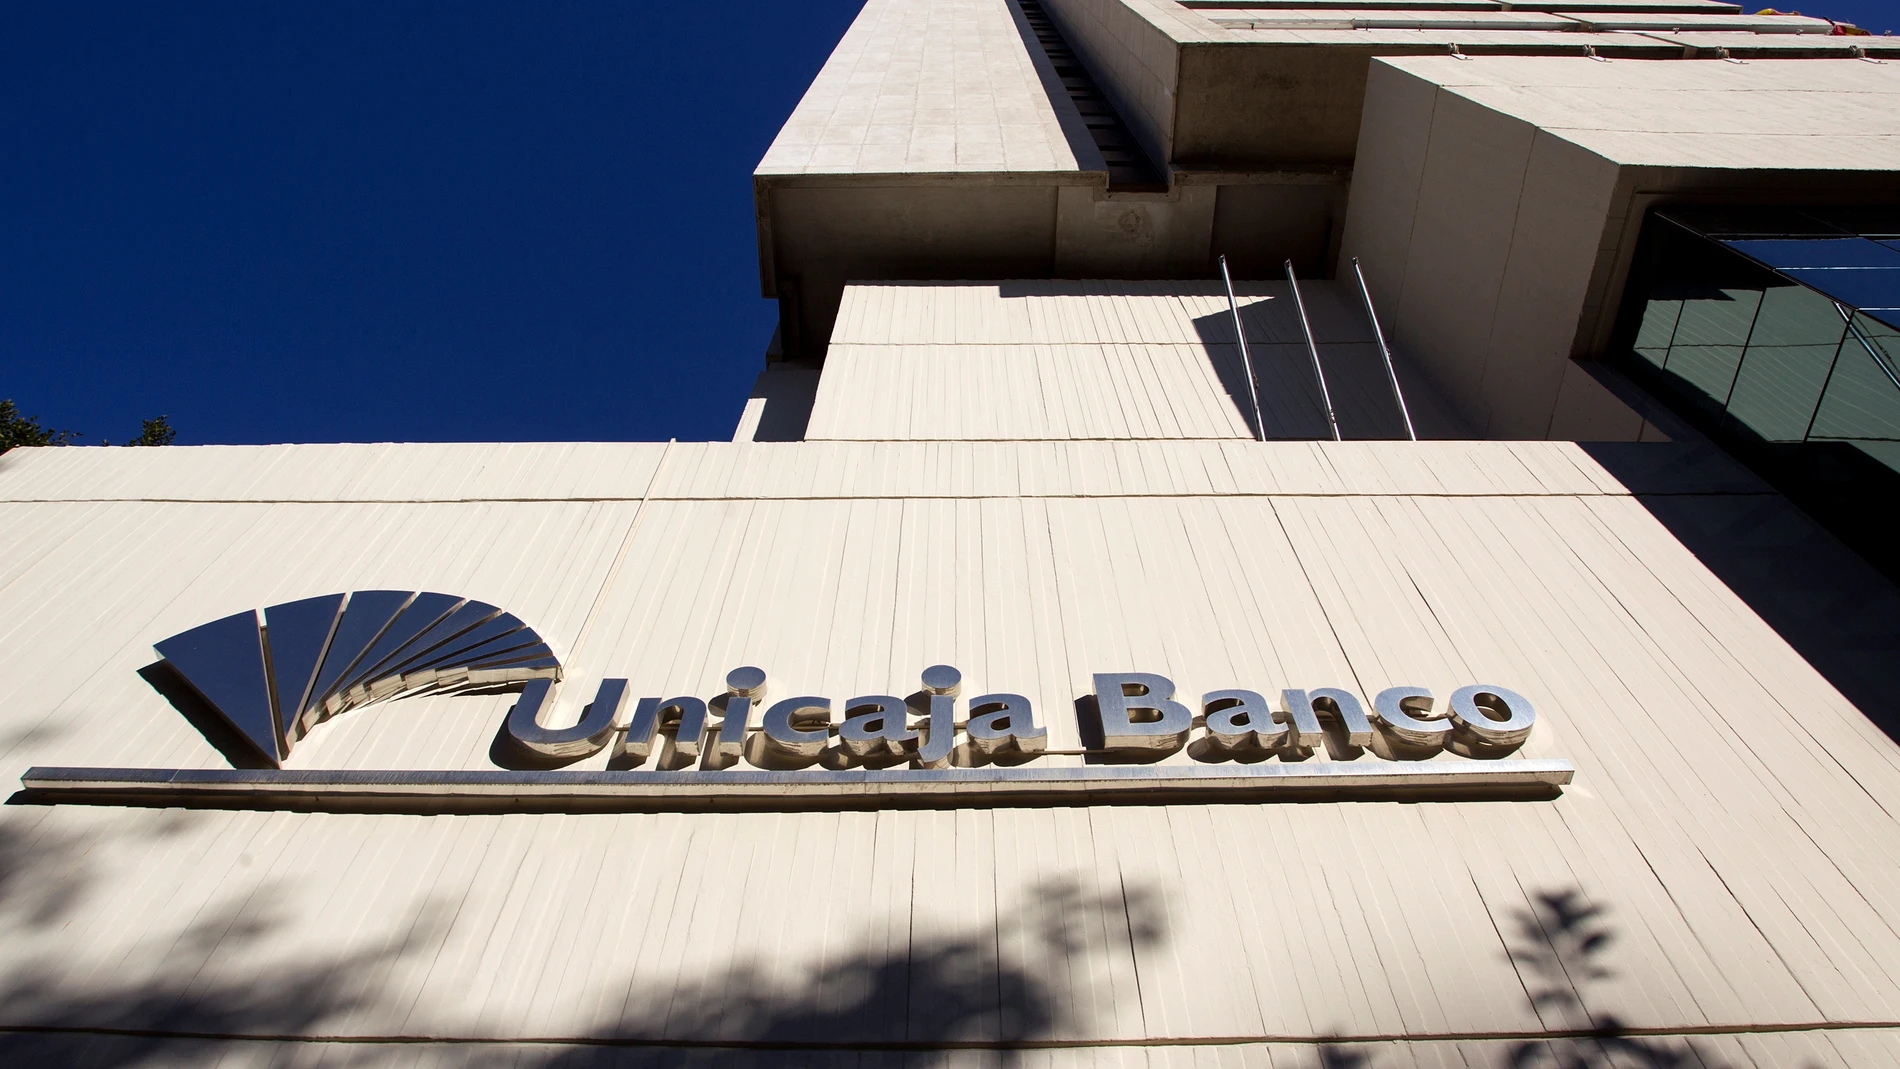 Sede central de Unicaja Banco en Málaga